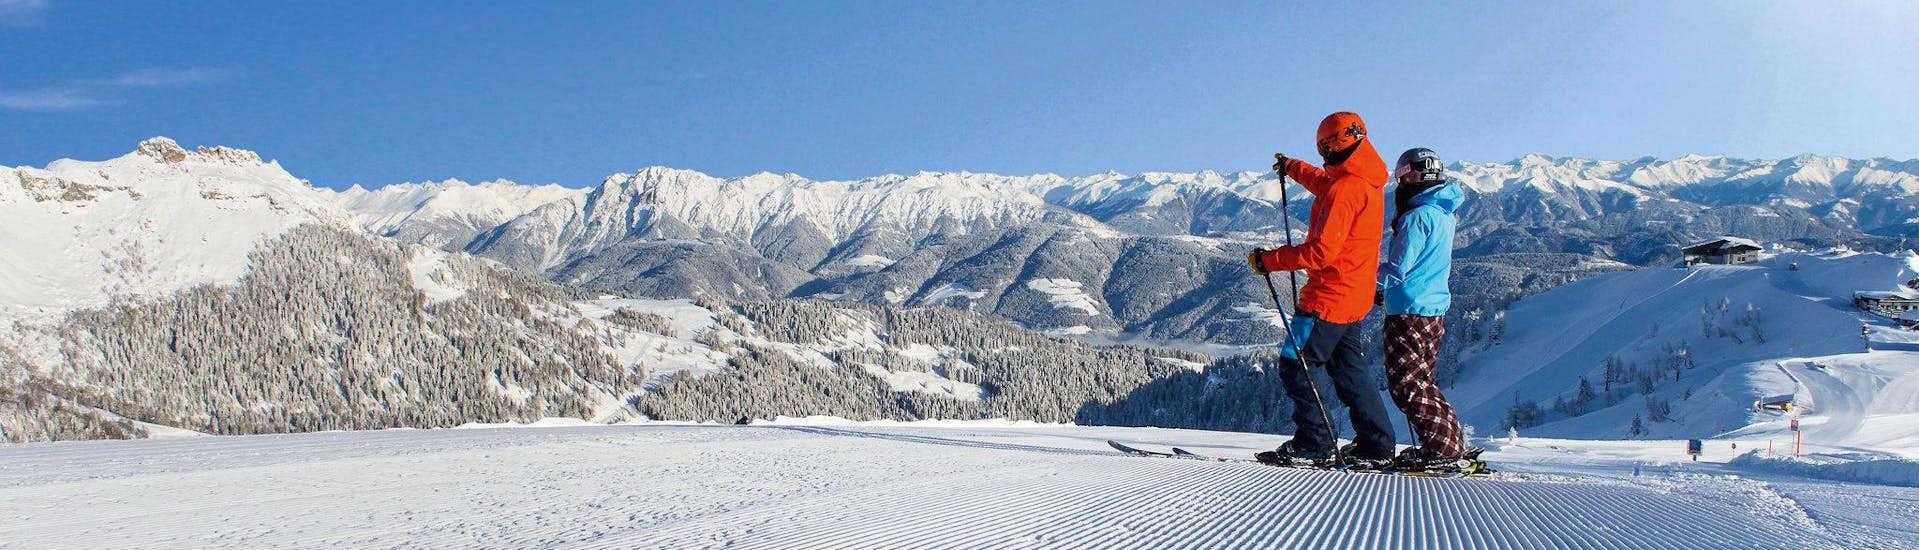 Ausblick auf die sonnige Berglandschaft beim Skifahren lernen mit den Skischulen im Skigebiet Nassfeld-Pressegger See.